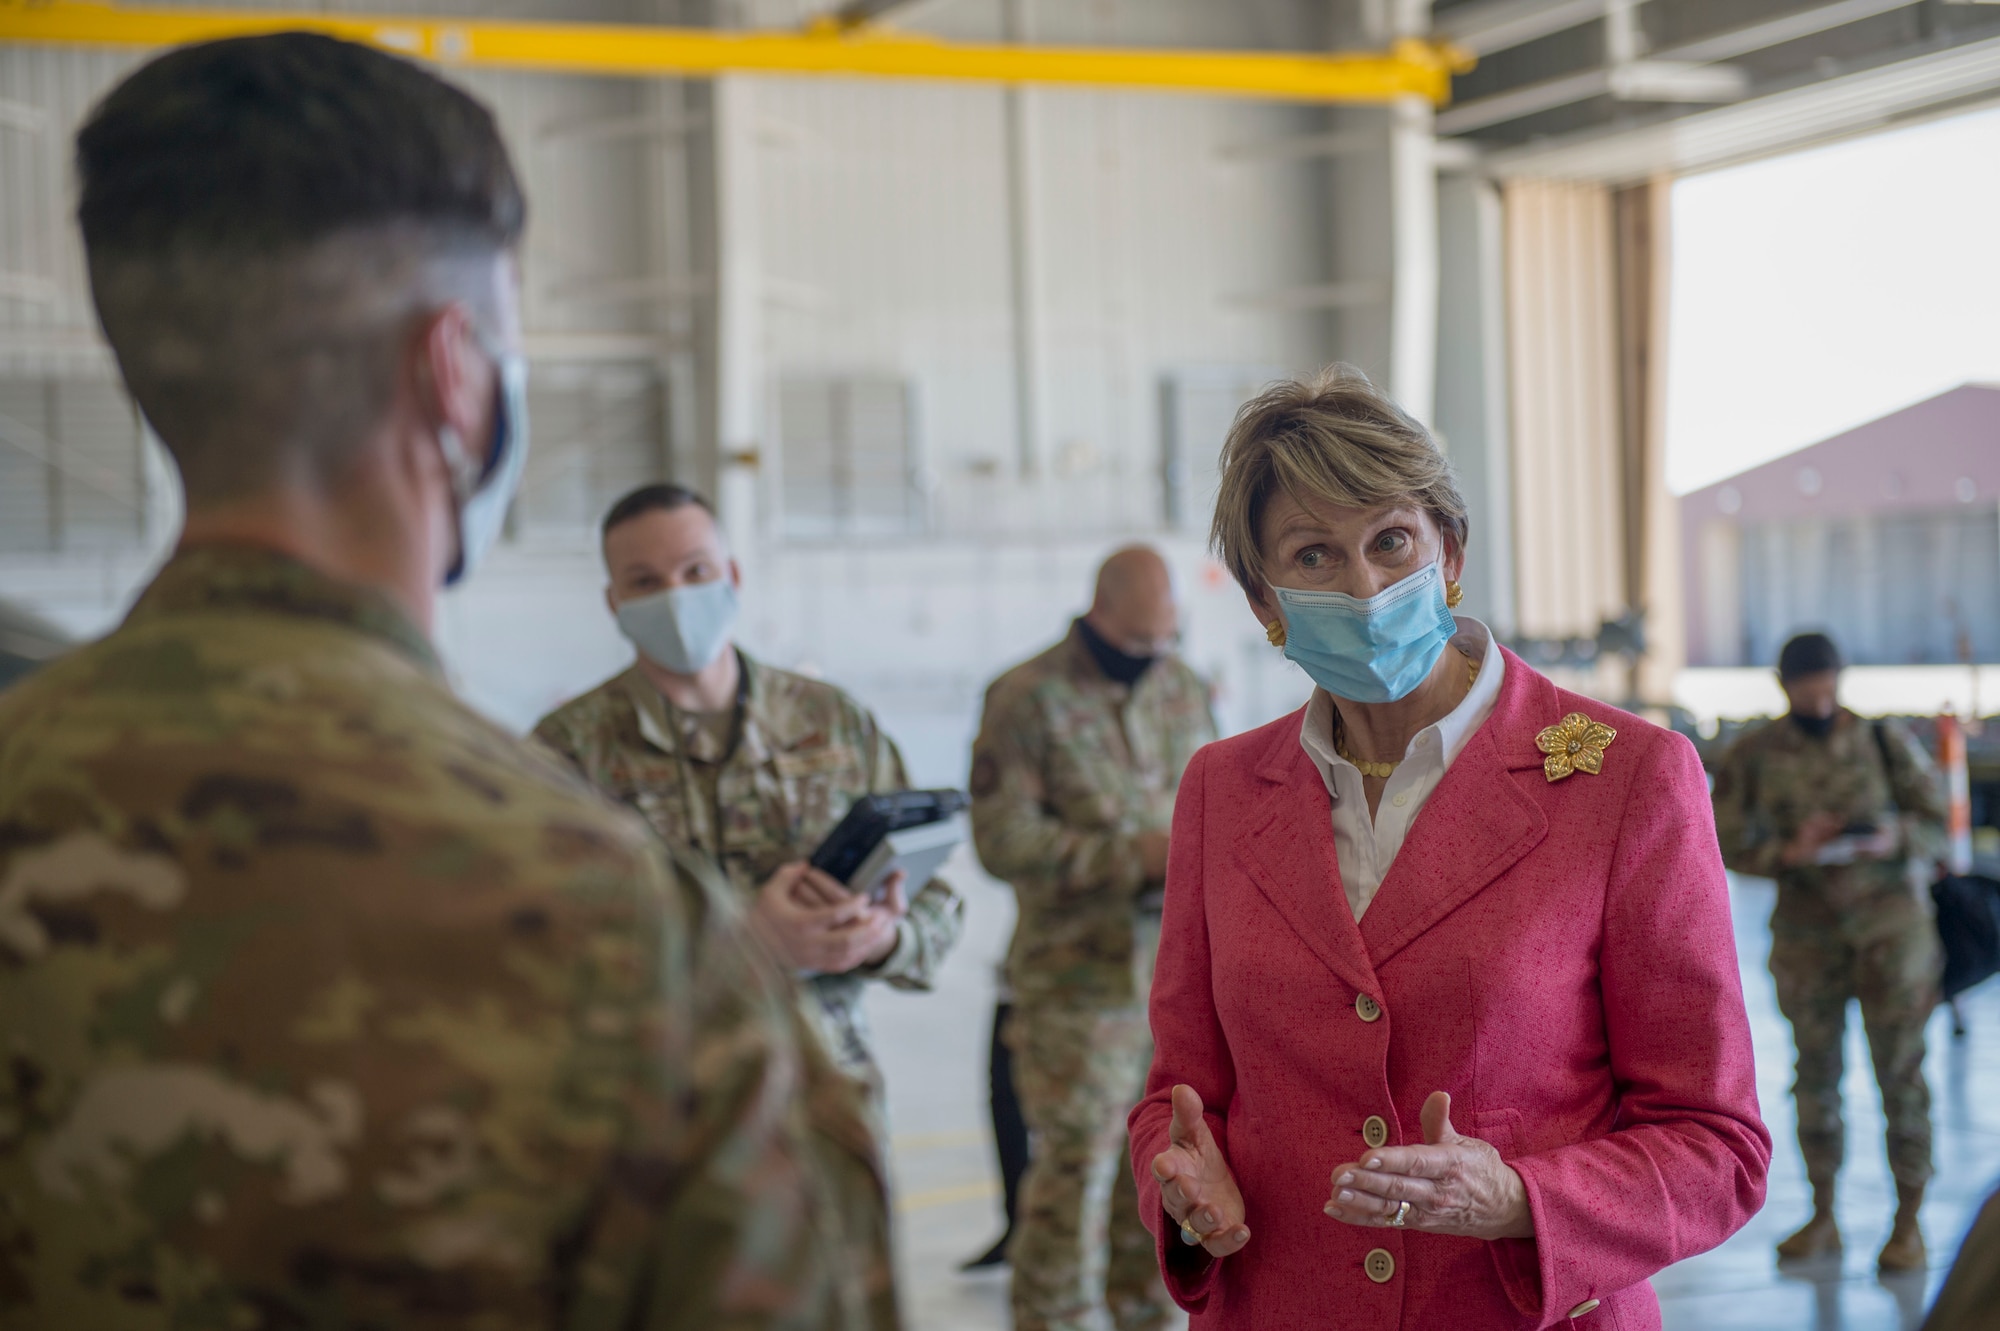 SECAF visits Holloman Air Force Base during COVID-19